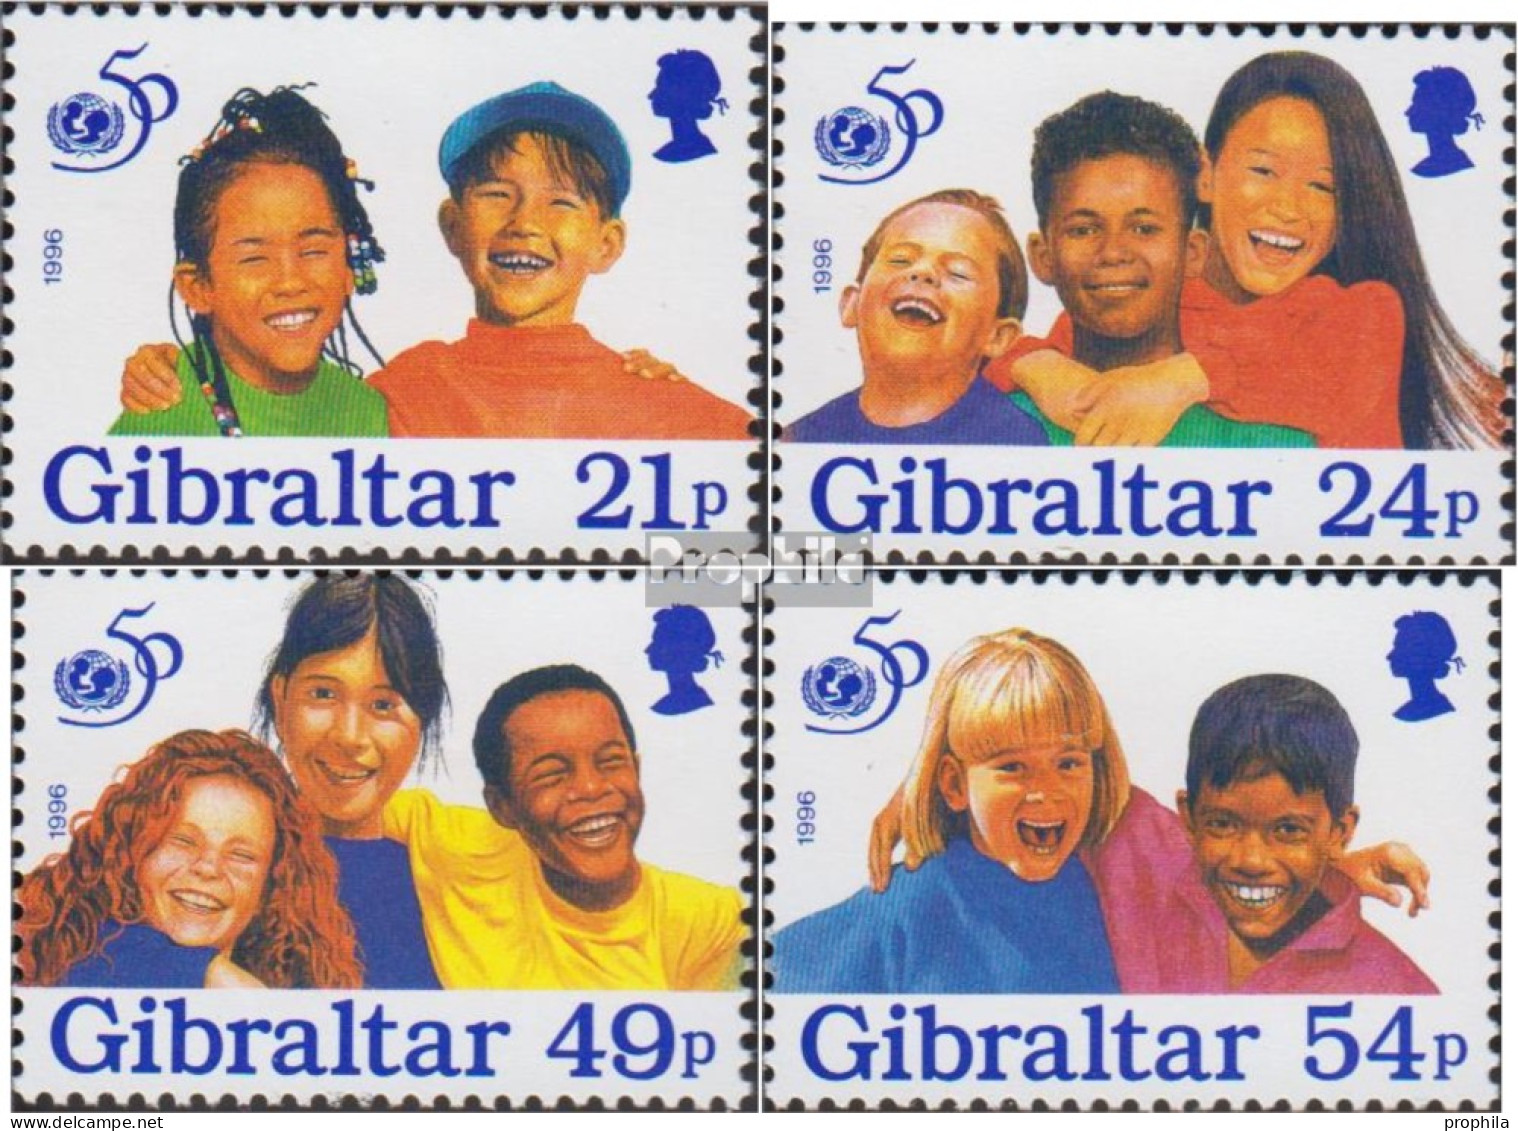 Gibraltar 770-773 (kompl.Ausg.) Postfrisch 1996 UNICEF - Gibraltar